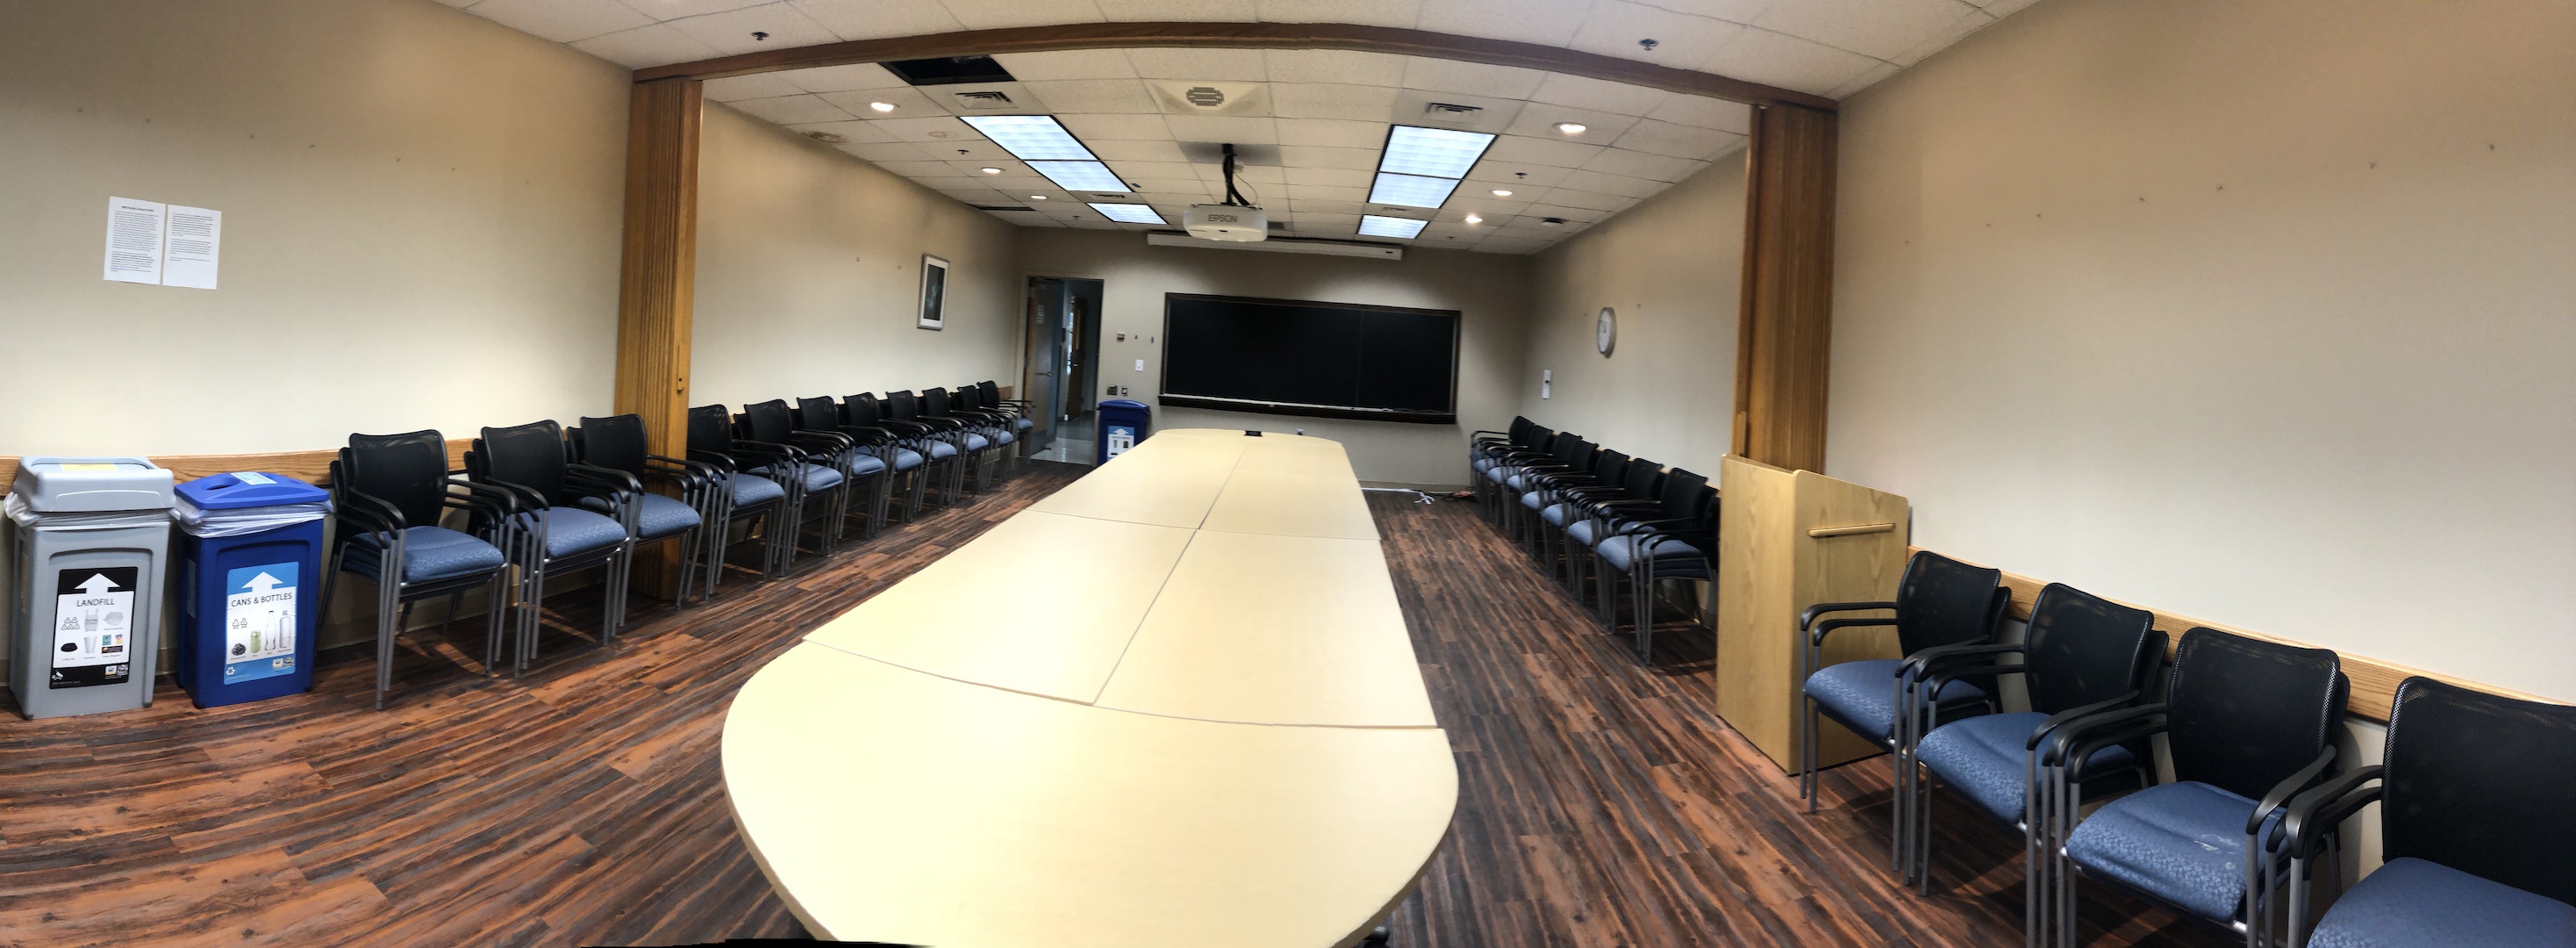 Koshland Hall 338 Conference Room Layout Photo